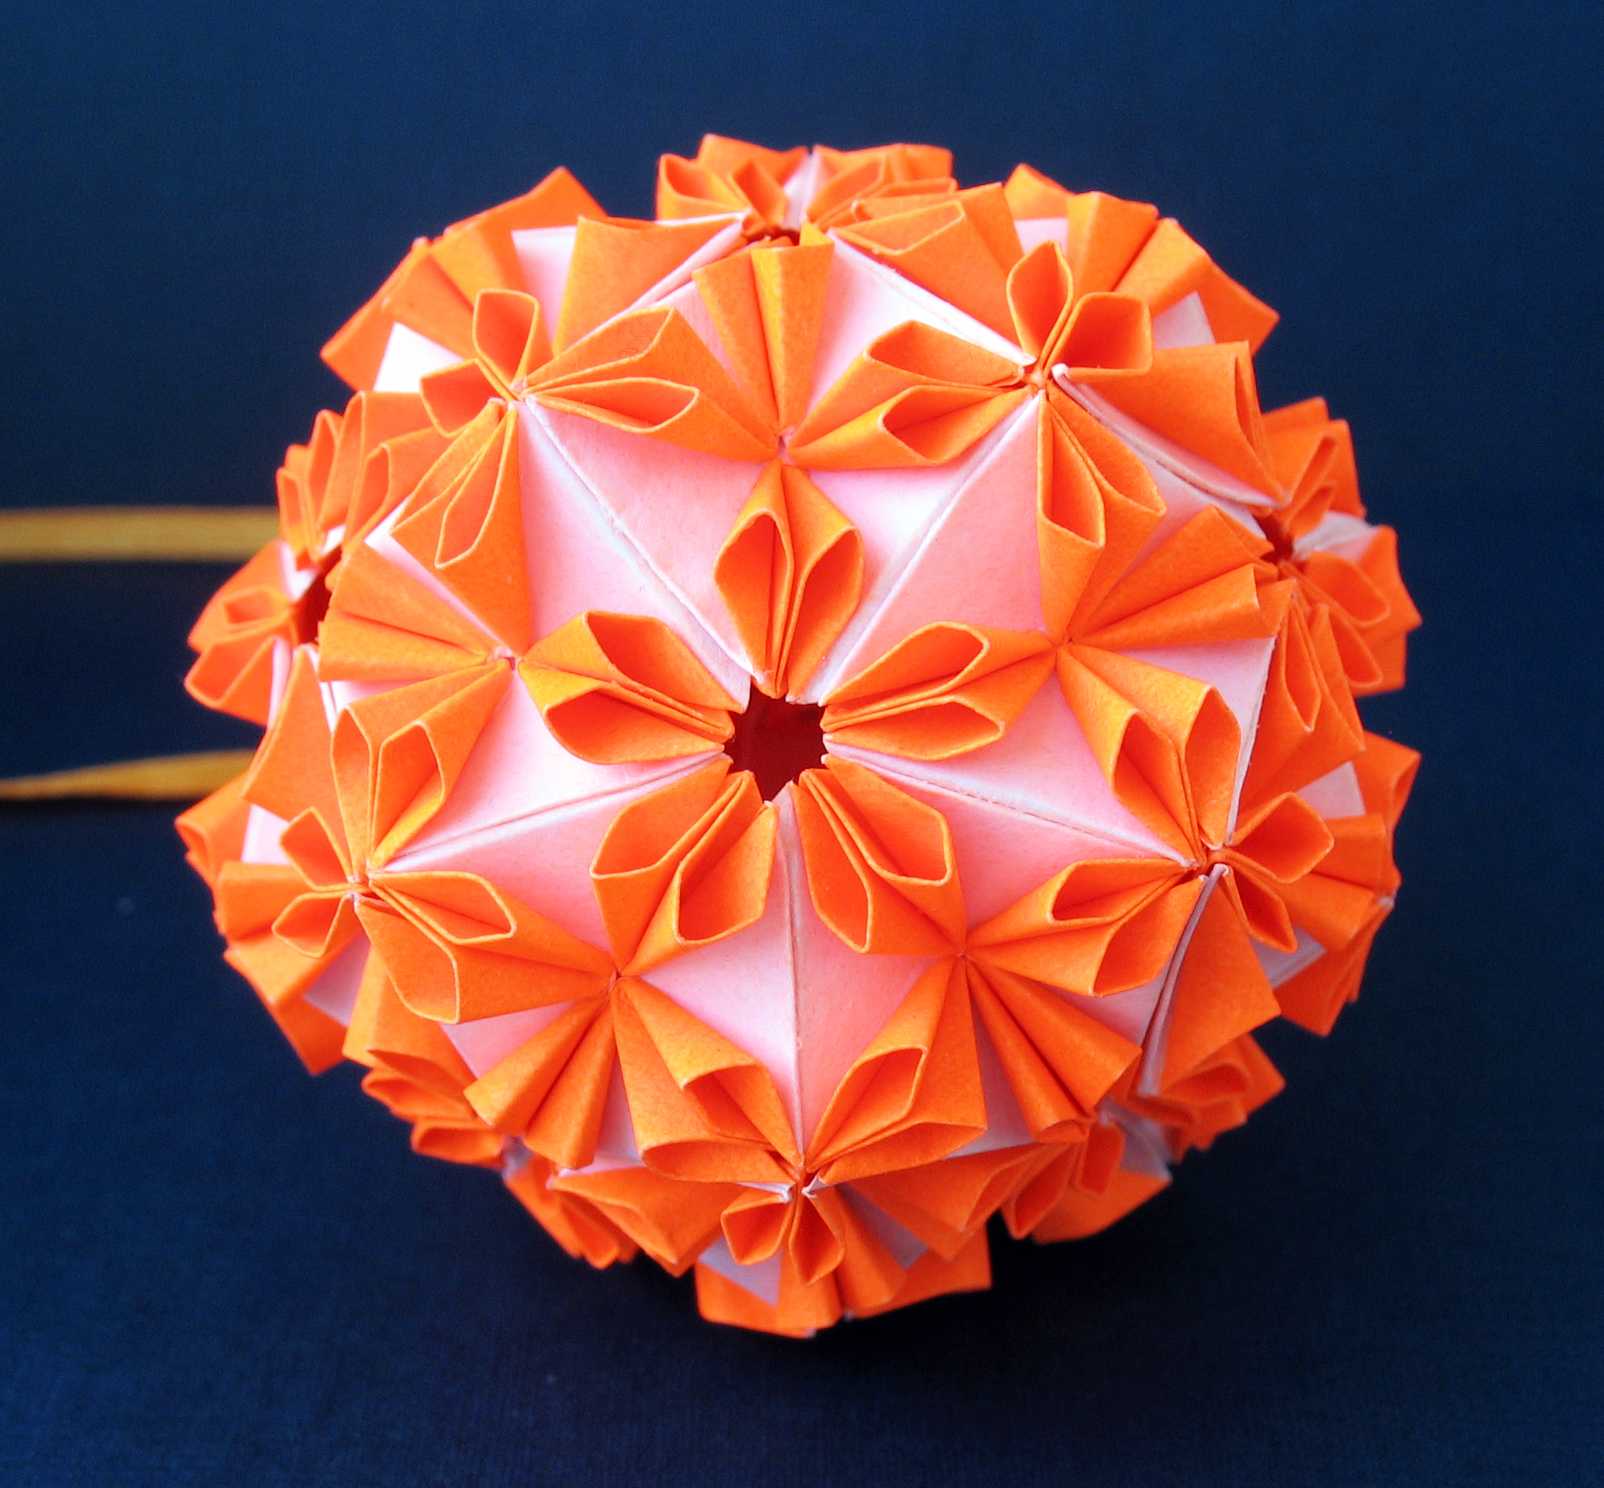 Как сделать простое модульное оригами - инструменты, сборка модулей. фото моделей оригами для начинающих